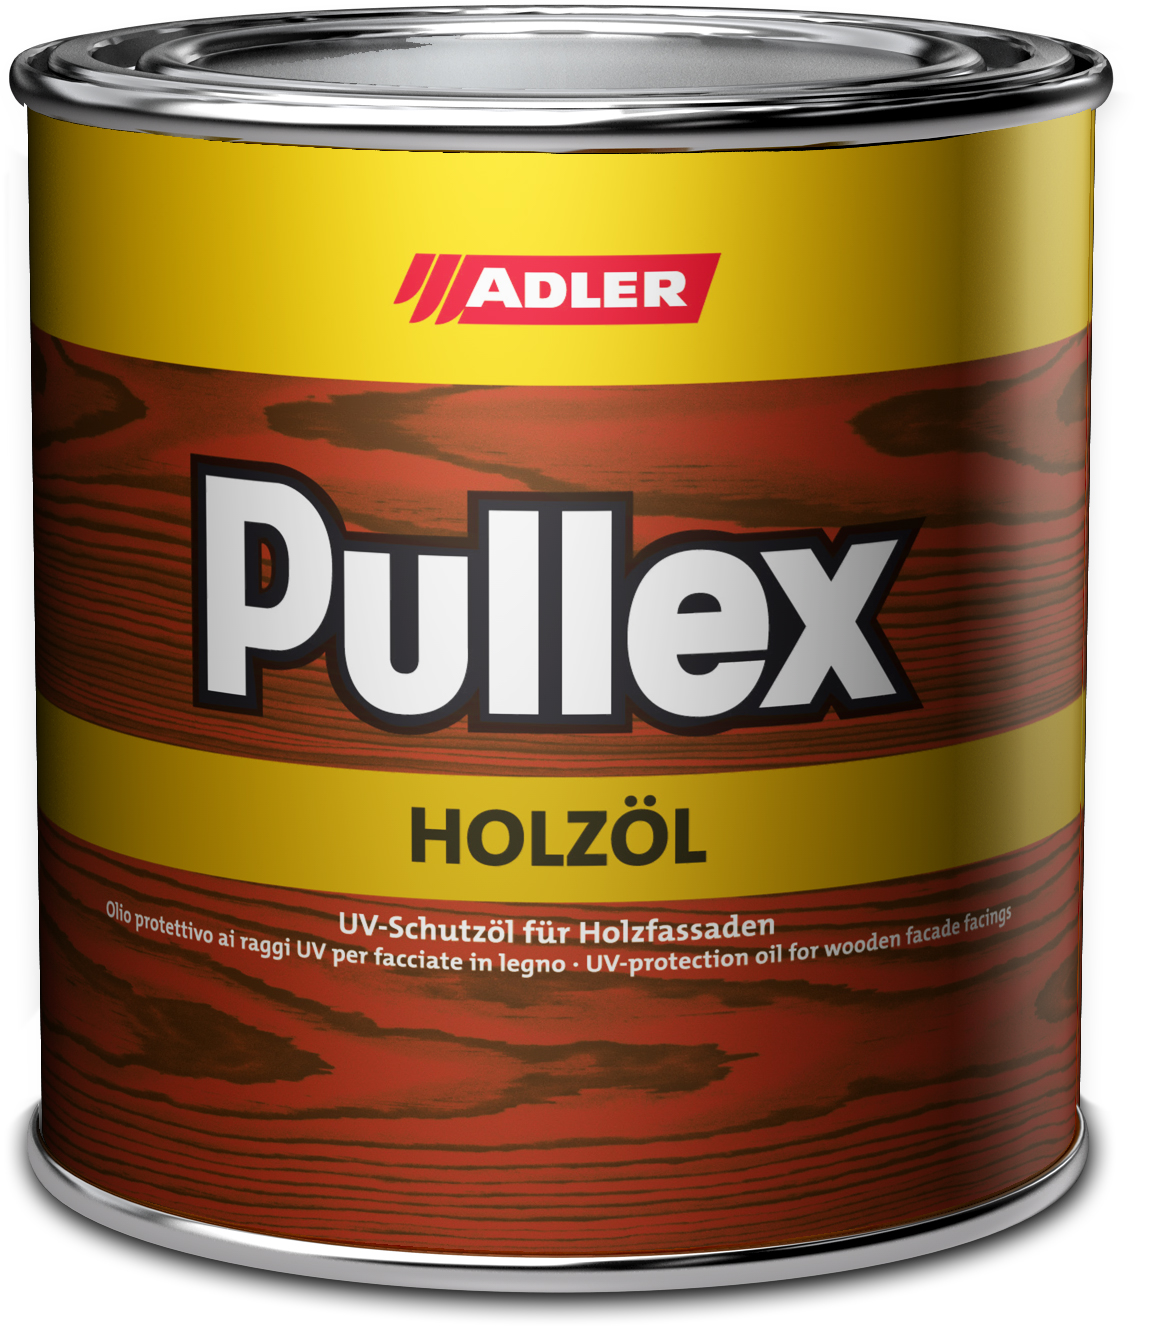 Adler Pullex Holzöl Lärche,10L